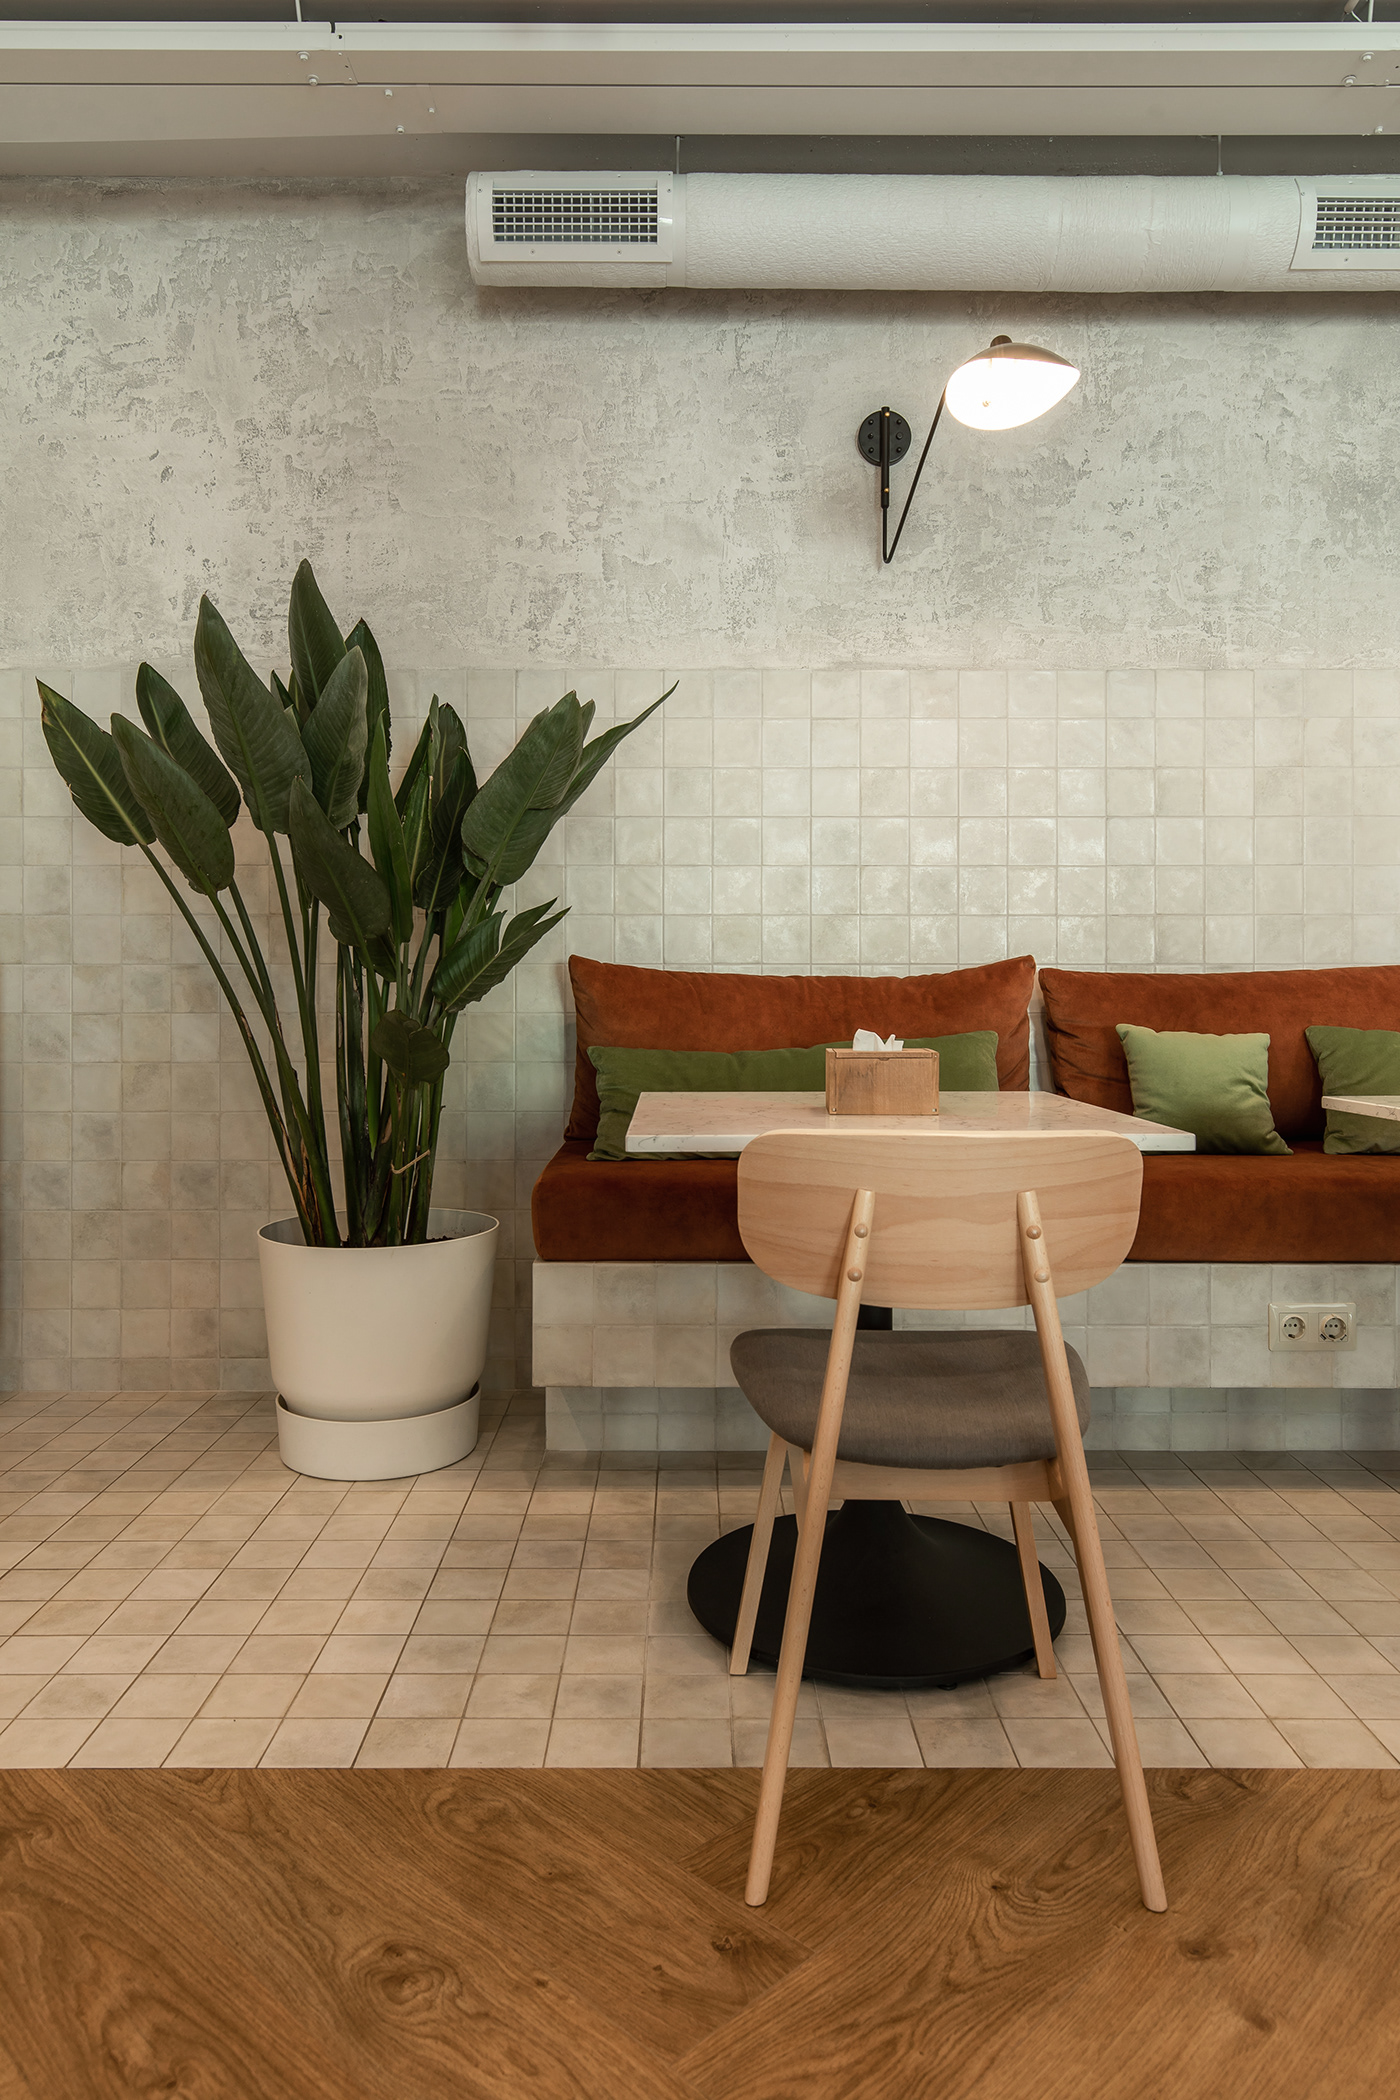 Cafe design design Interior interior design 